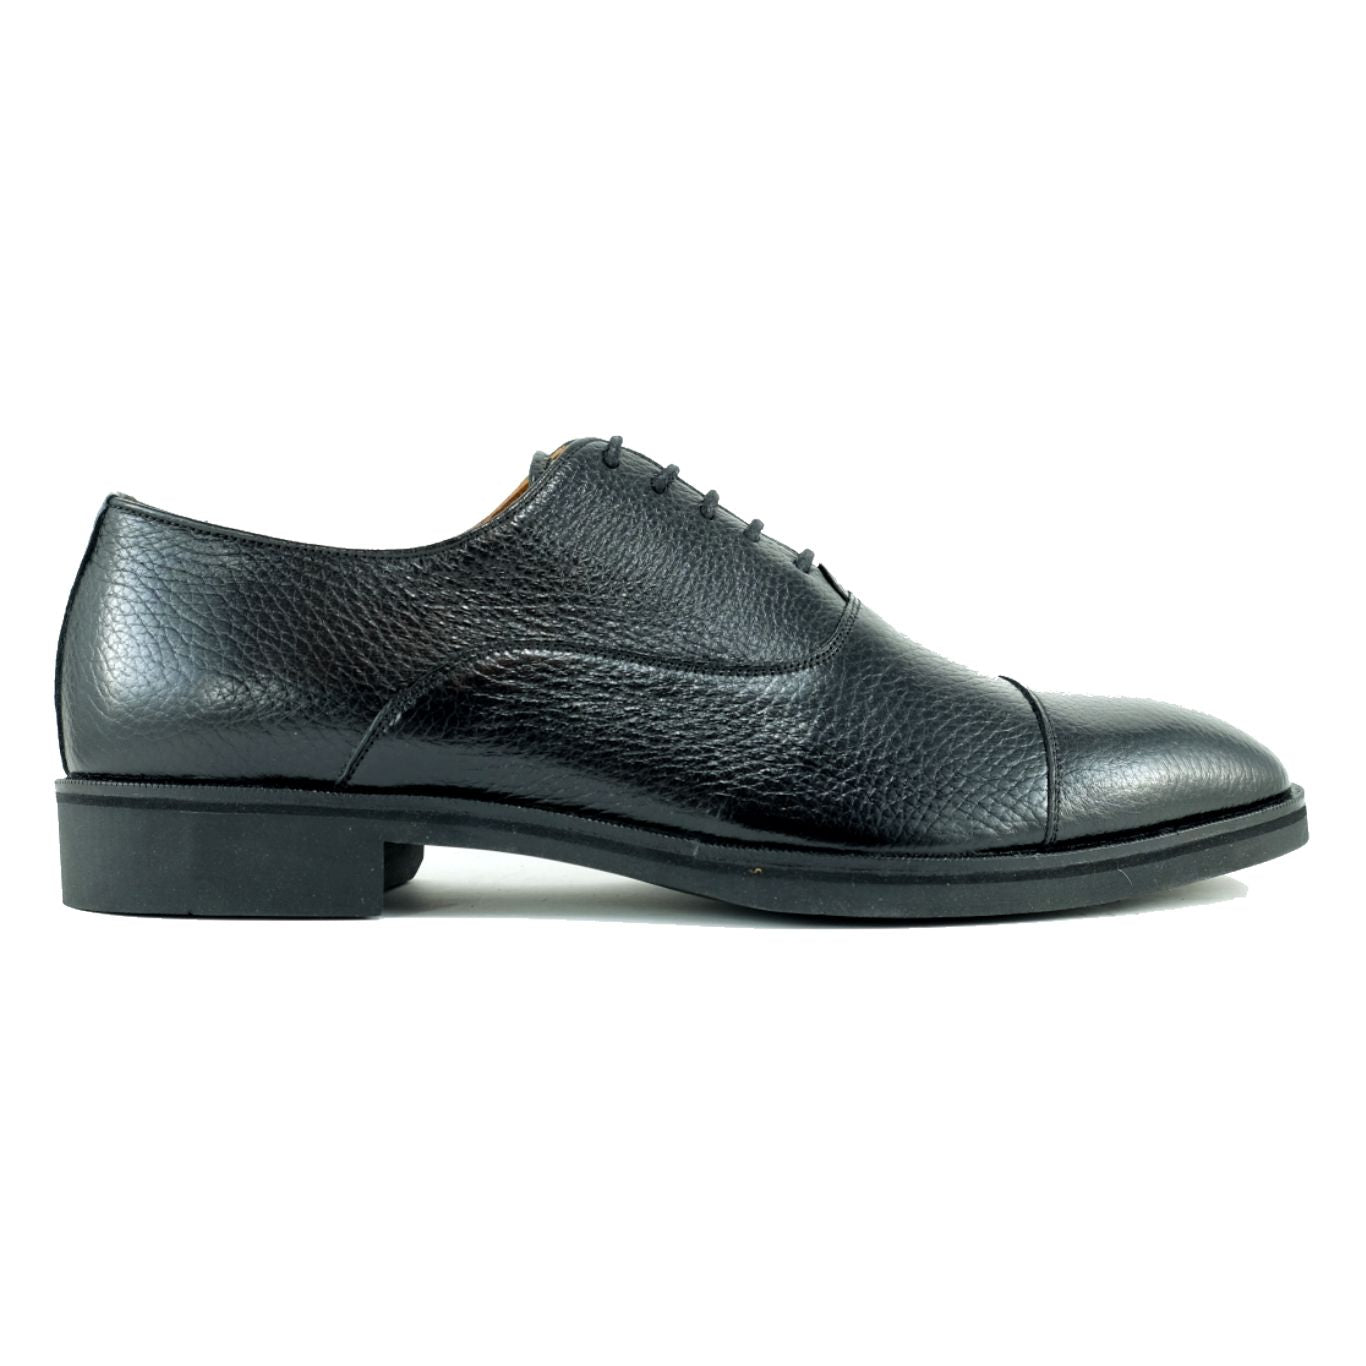 Bern Deerskin Cap-Toe Oxford in Black by Alan Payne Footwear